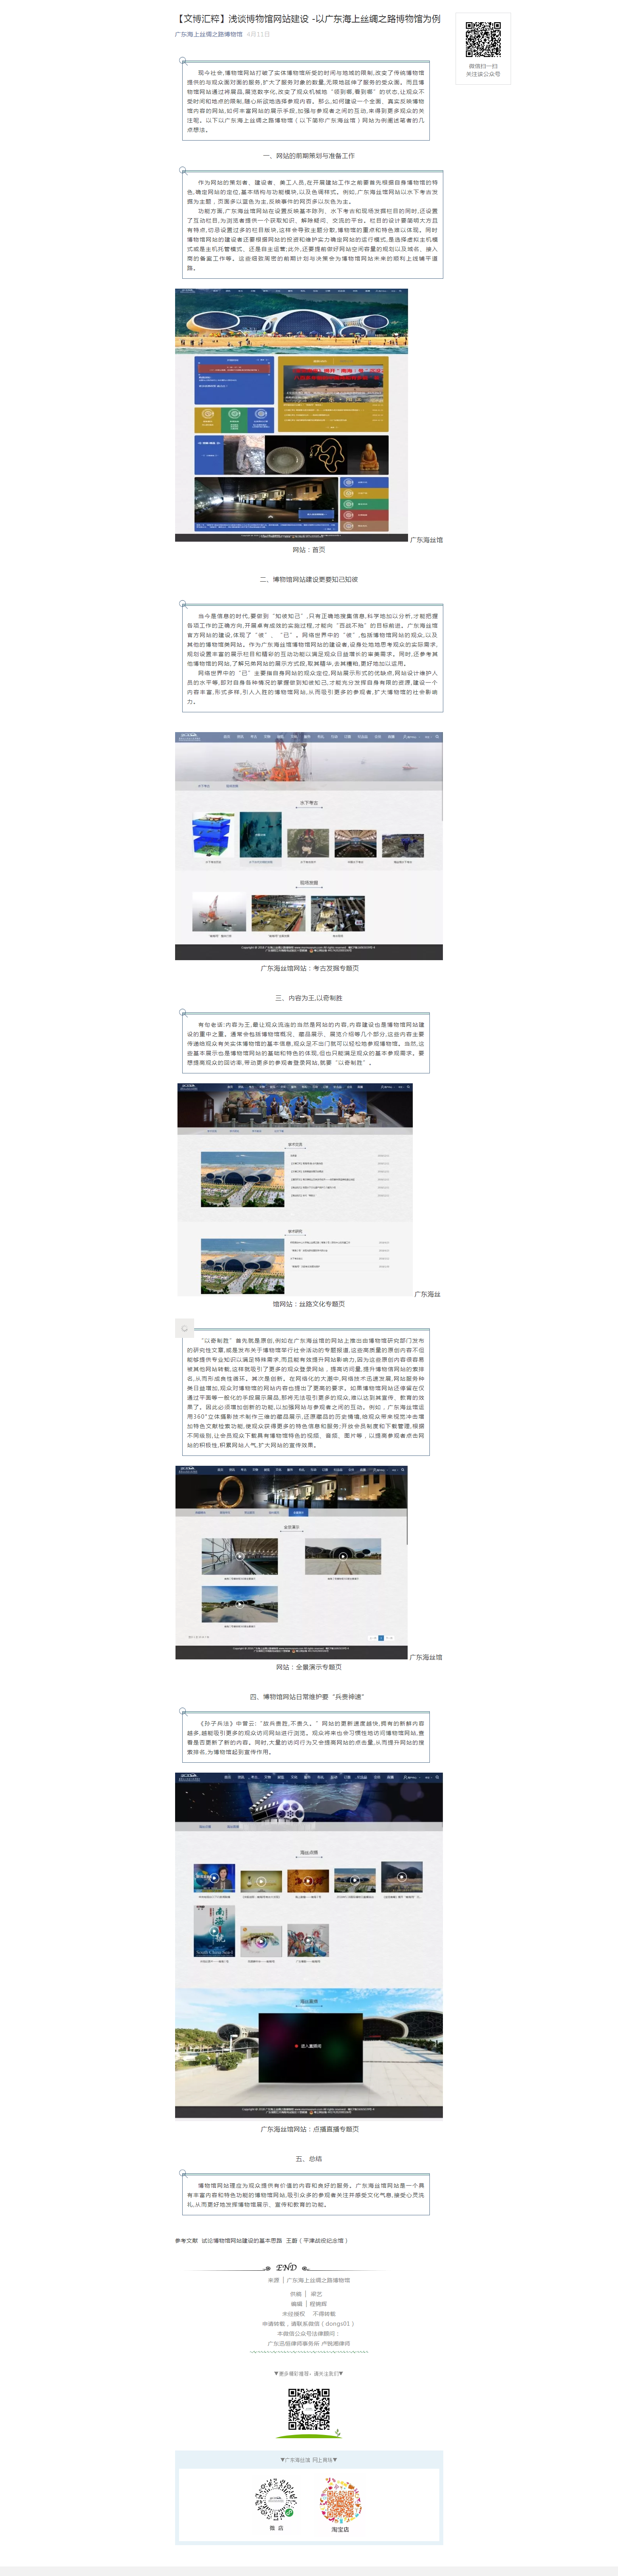 【文博汇粹】浅谈博物馆网站建设 -以广东海上丝绸之路博物馆为例.png